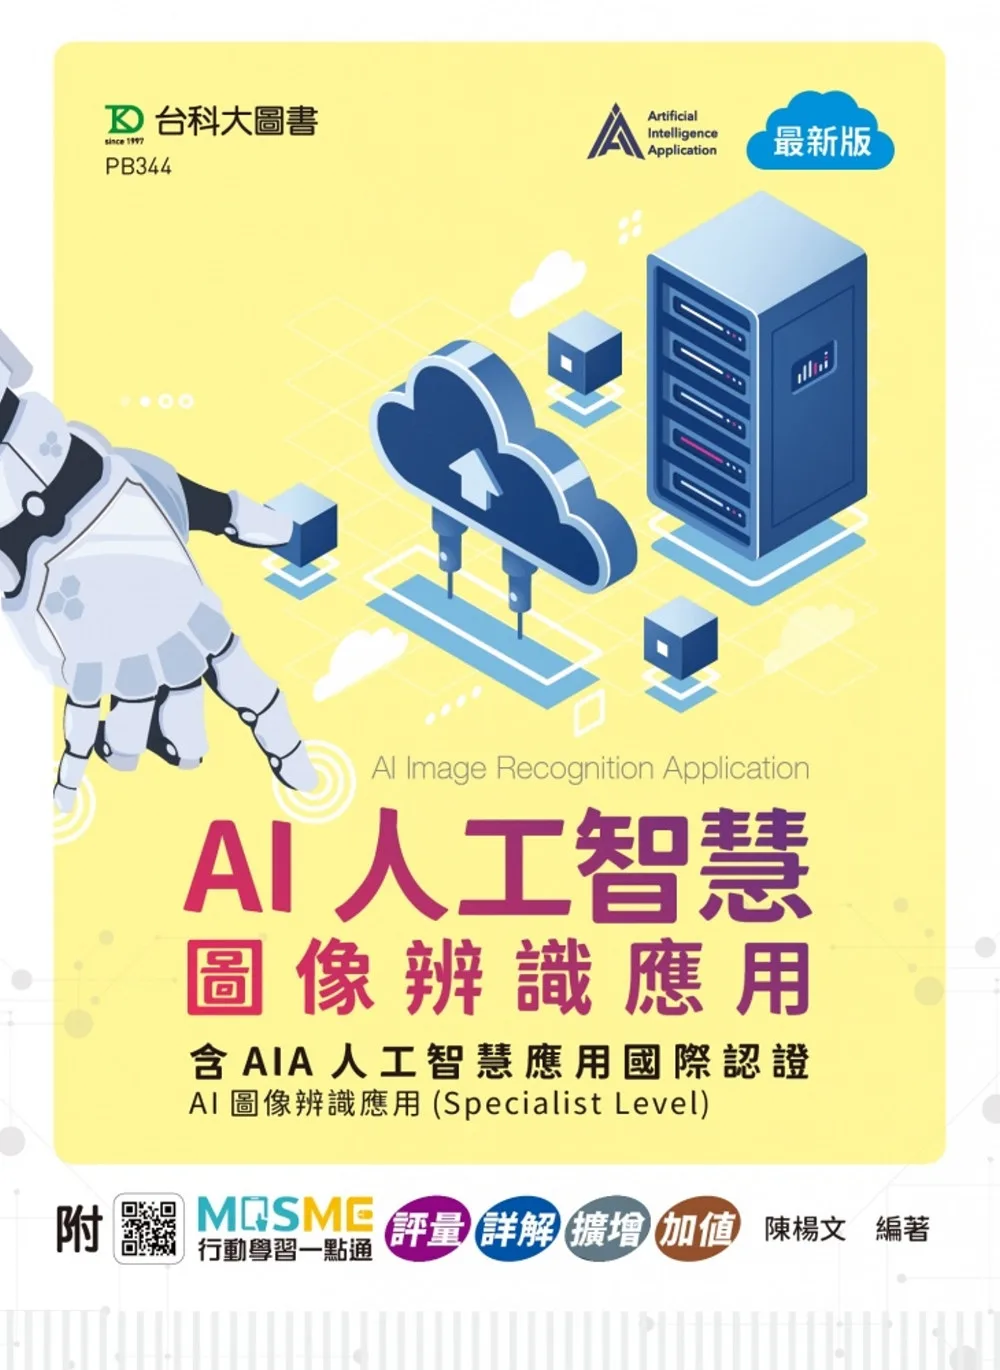 AI人工智慧圖像辨識應用含AIA人工智慧應用國際認證